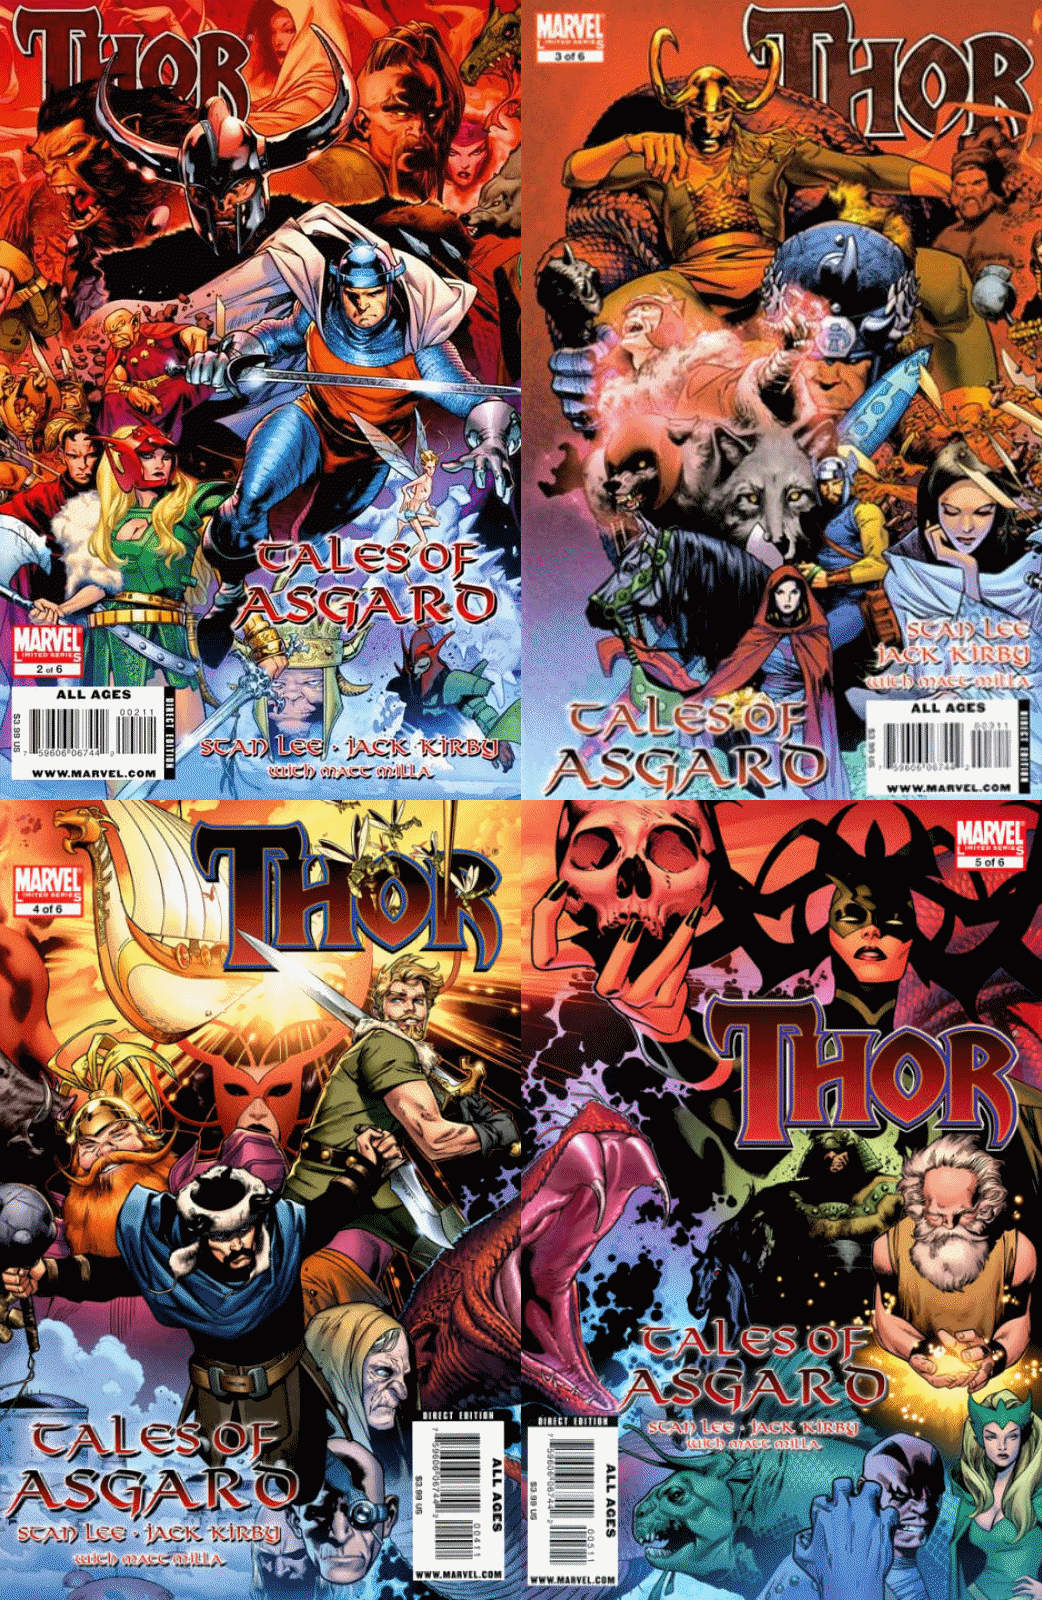 Thor: Tales of Asgard #2-5 (2009-2010) Marvel Comics - 4 Comics